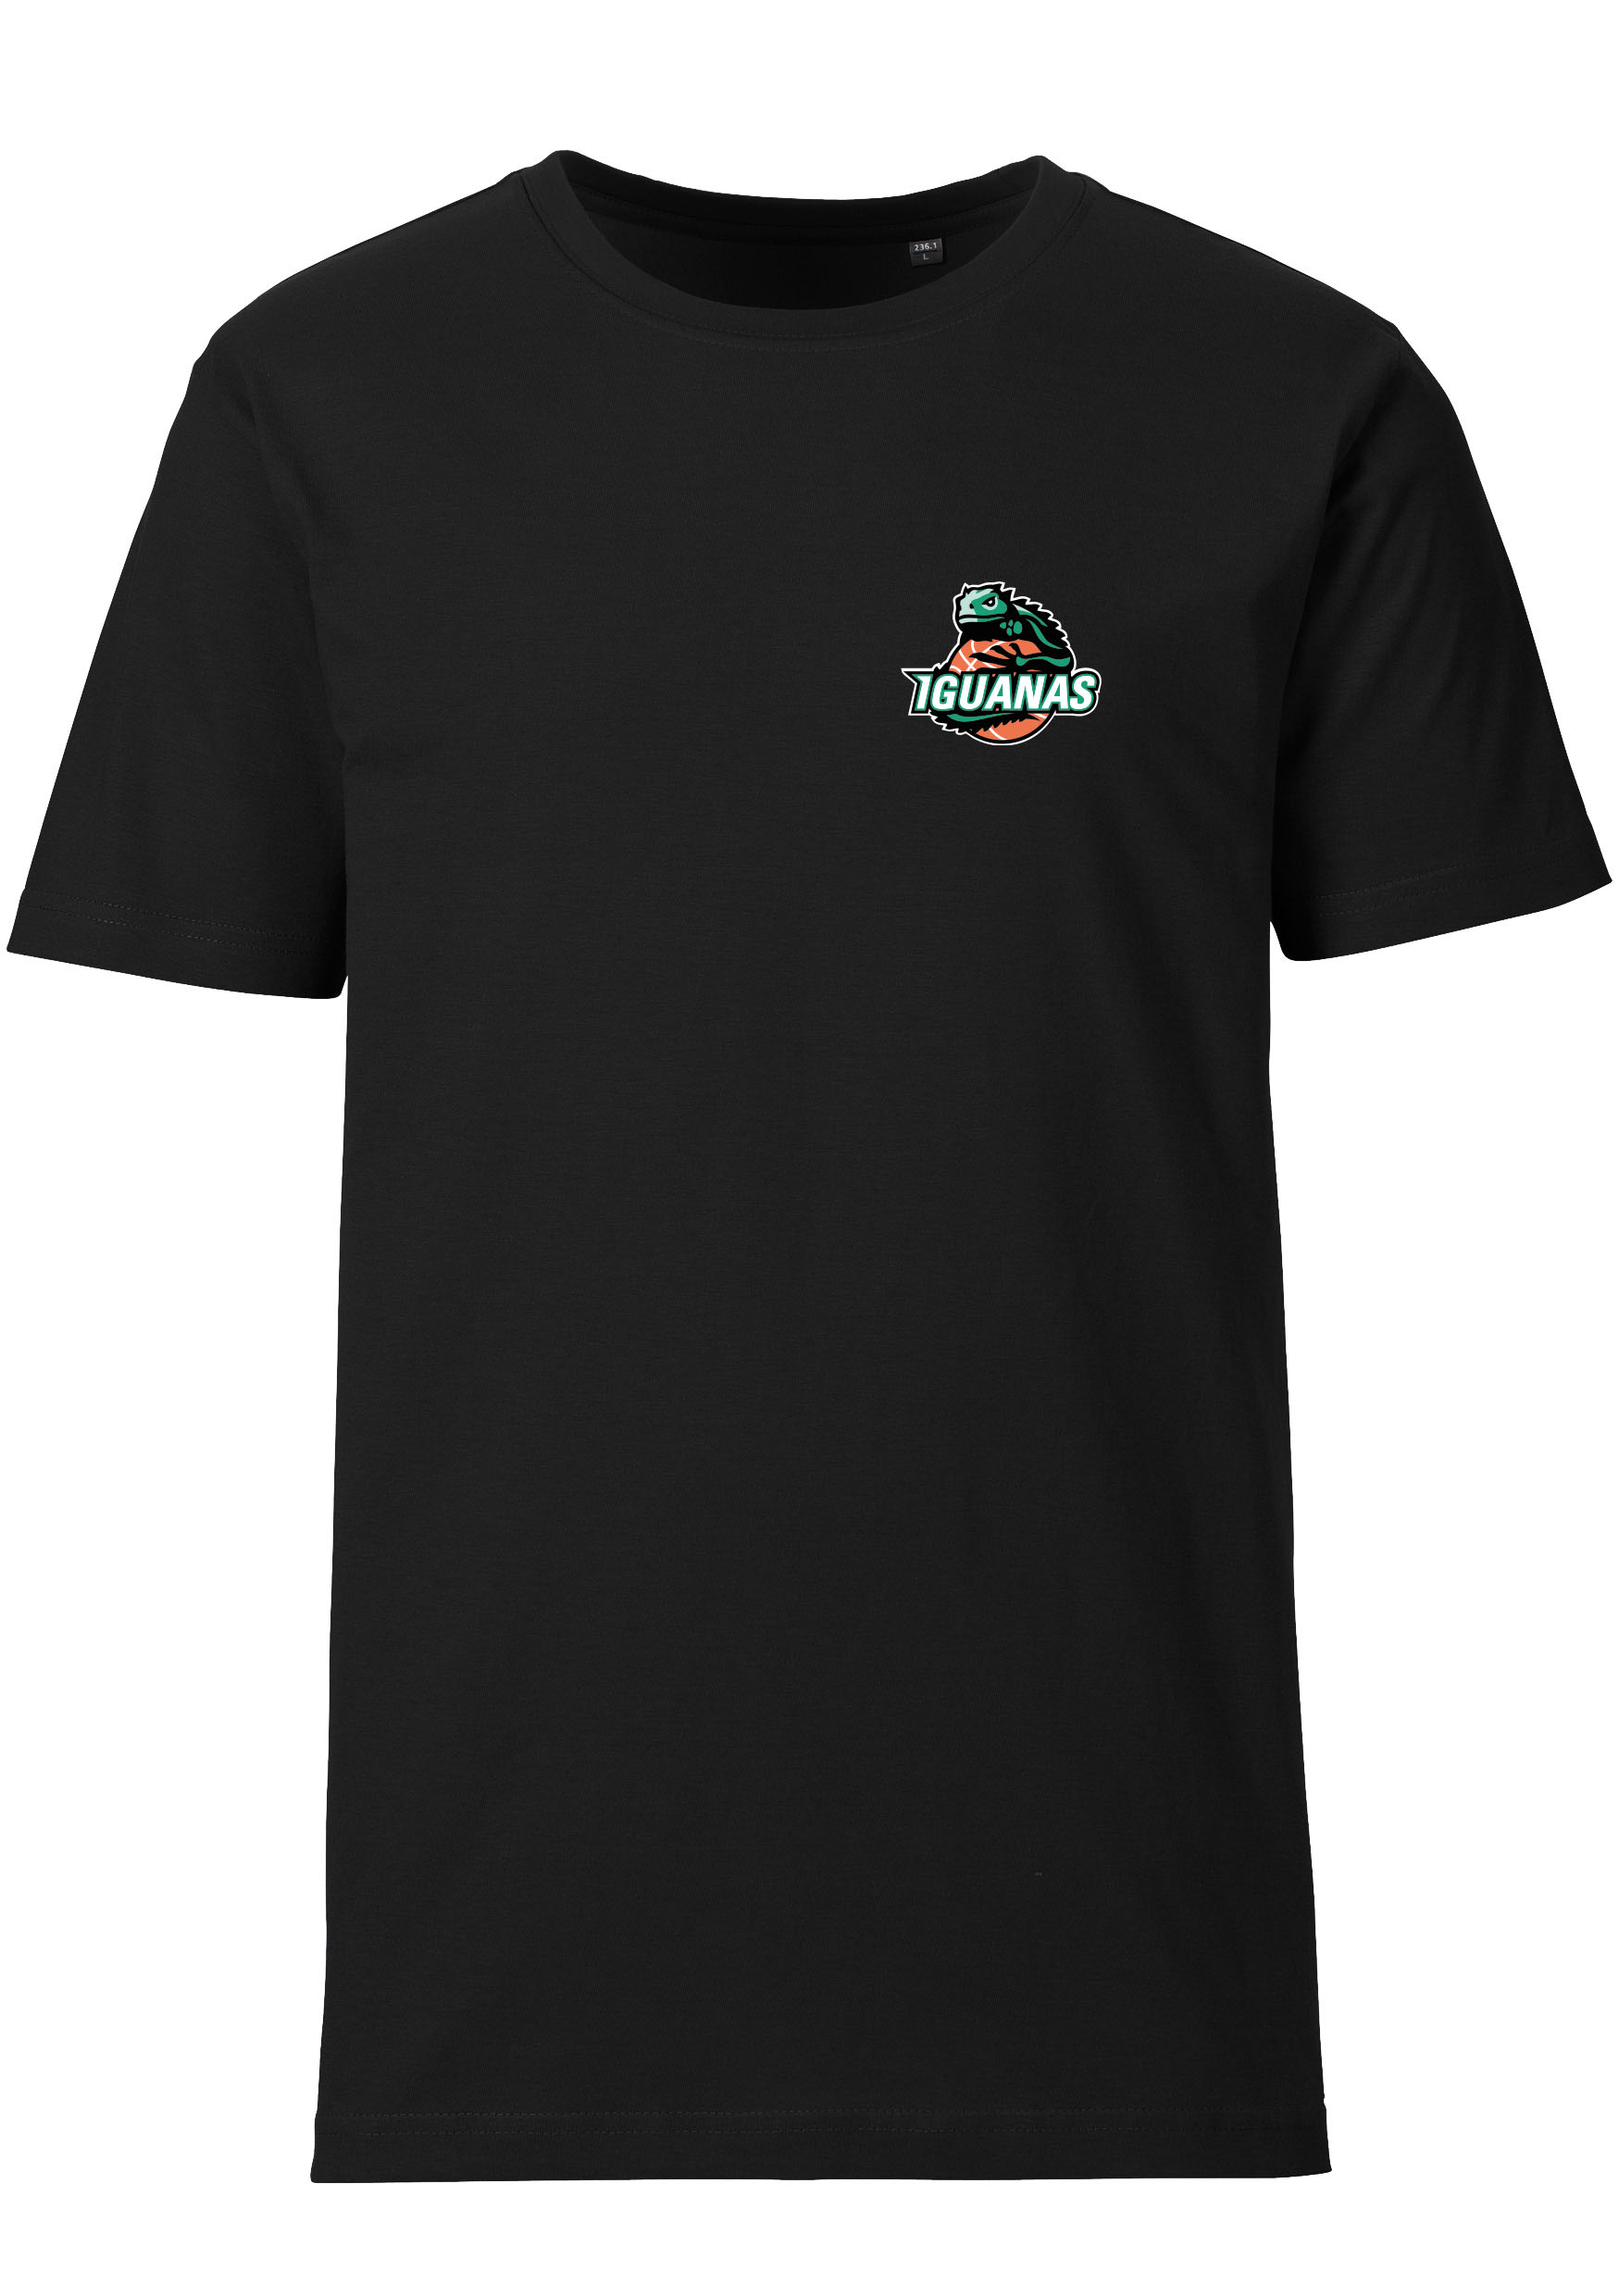 Iguanas T-Shirt Herren Logo klein